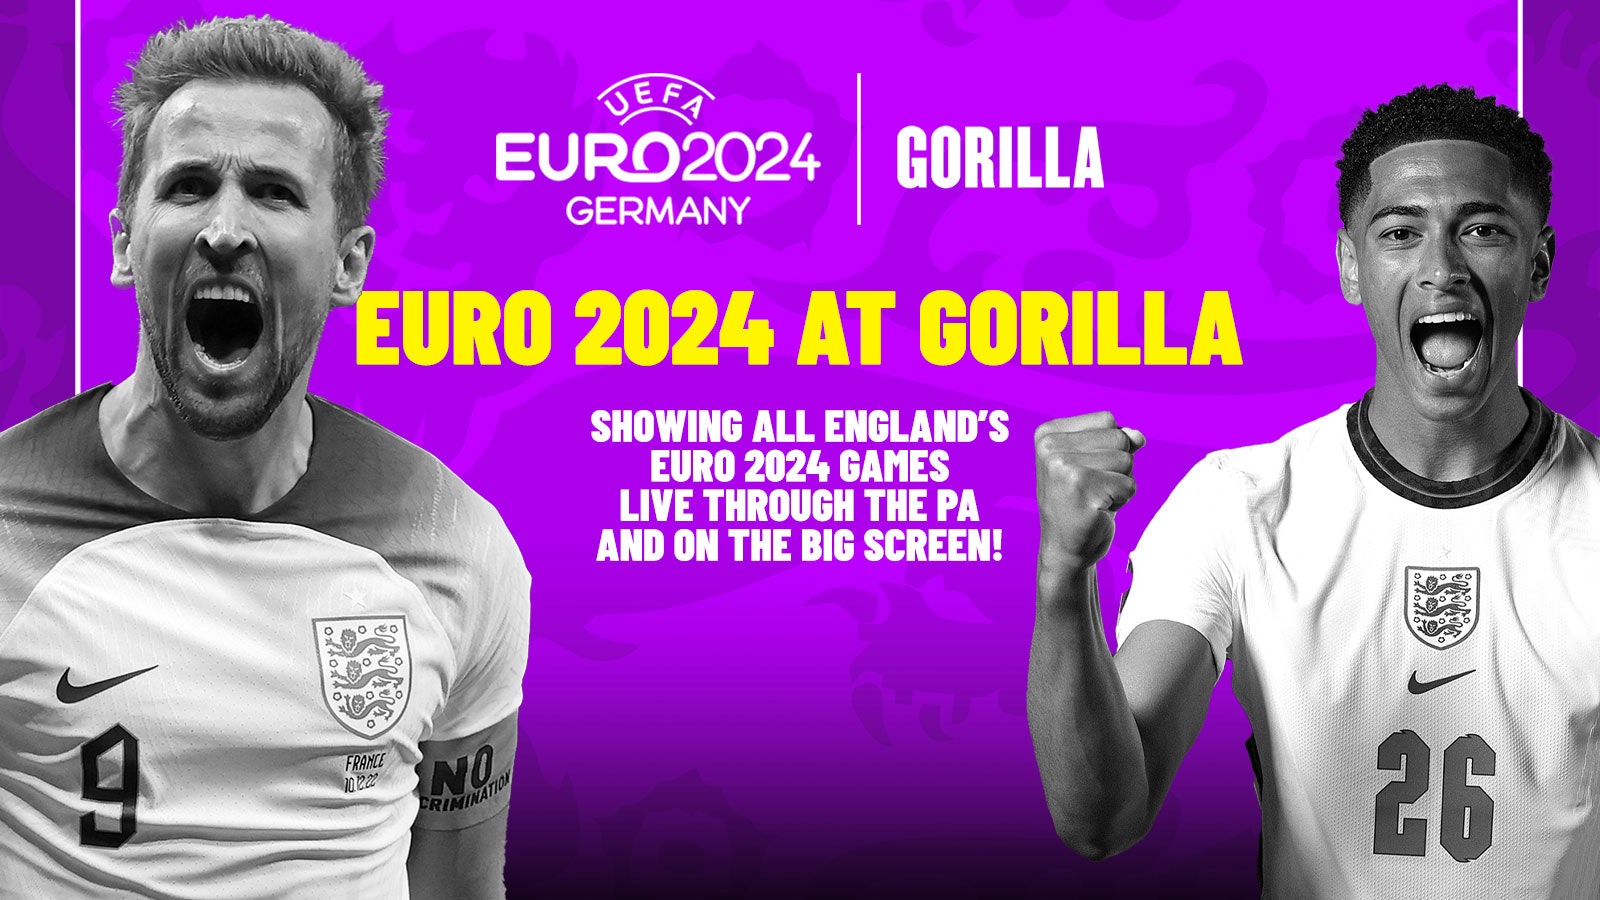 ENGLAND V SLOVENIA – EURO 2024 AT GORILLA